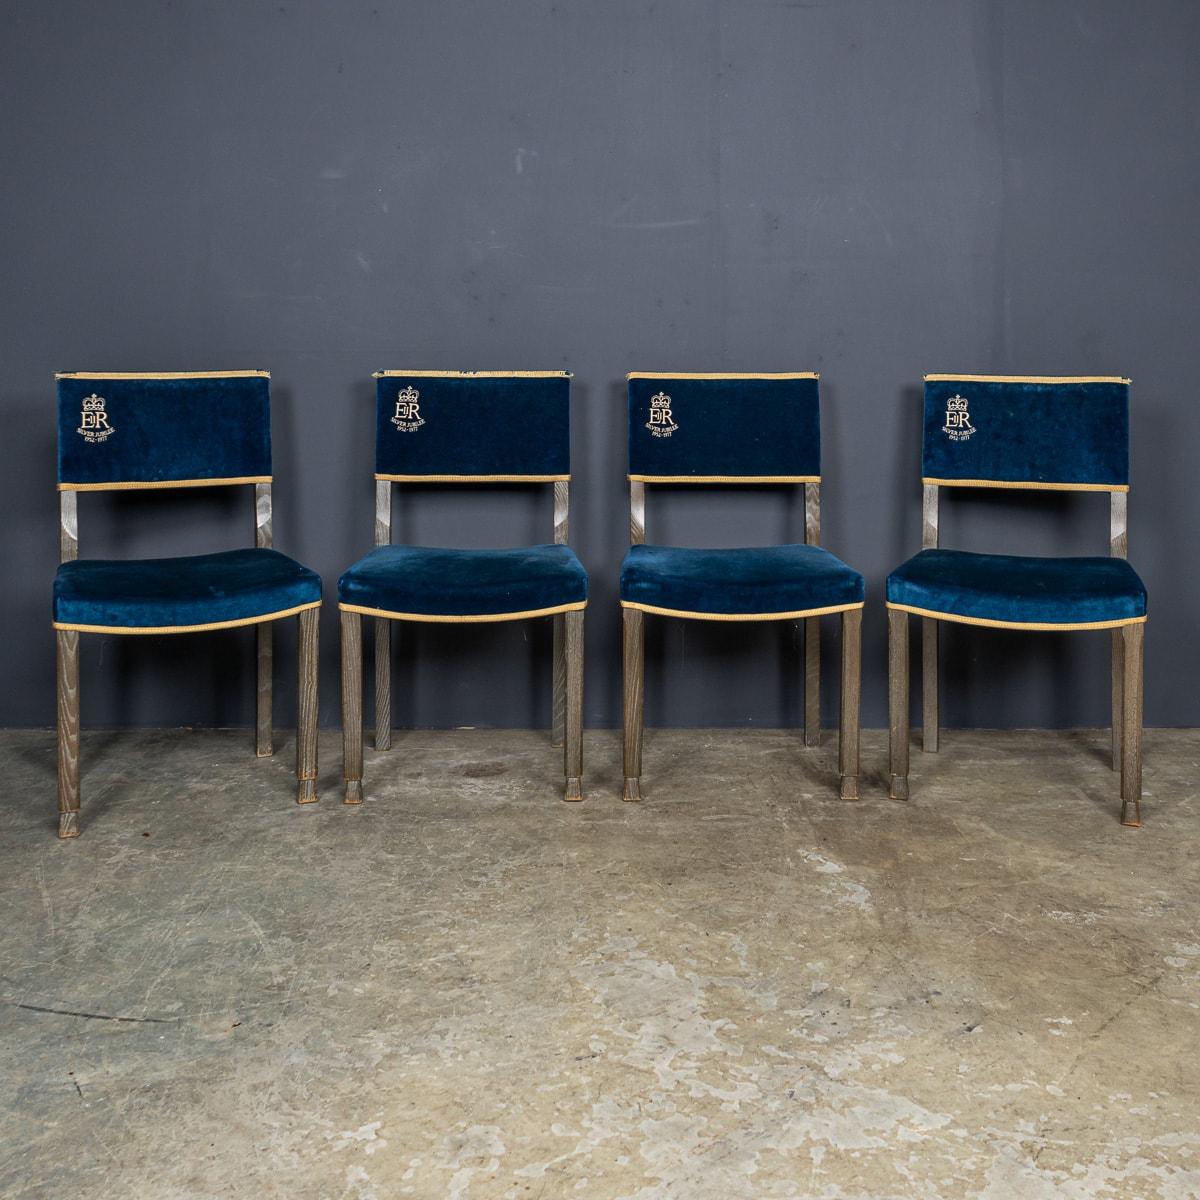 Ein prächtiges Set von vier blauen Samtstühlen aus dem 20. Jahrhundert, die den Stühlen nachempfunden sind, die von den Angehörigen des Volkes in der Westminster Abbey während der Krönung von Königin Elisabeth im Jahr 1952 verwendet wurden.